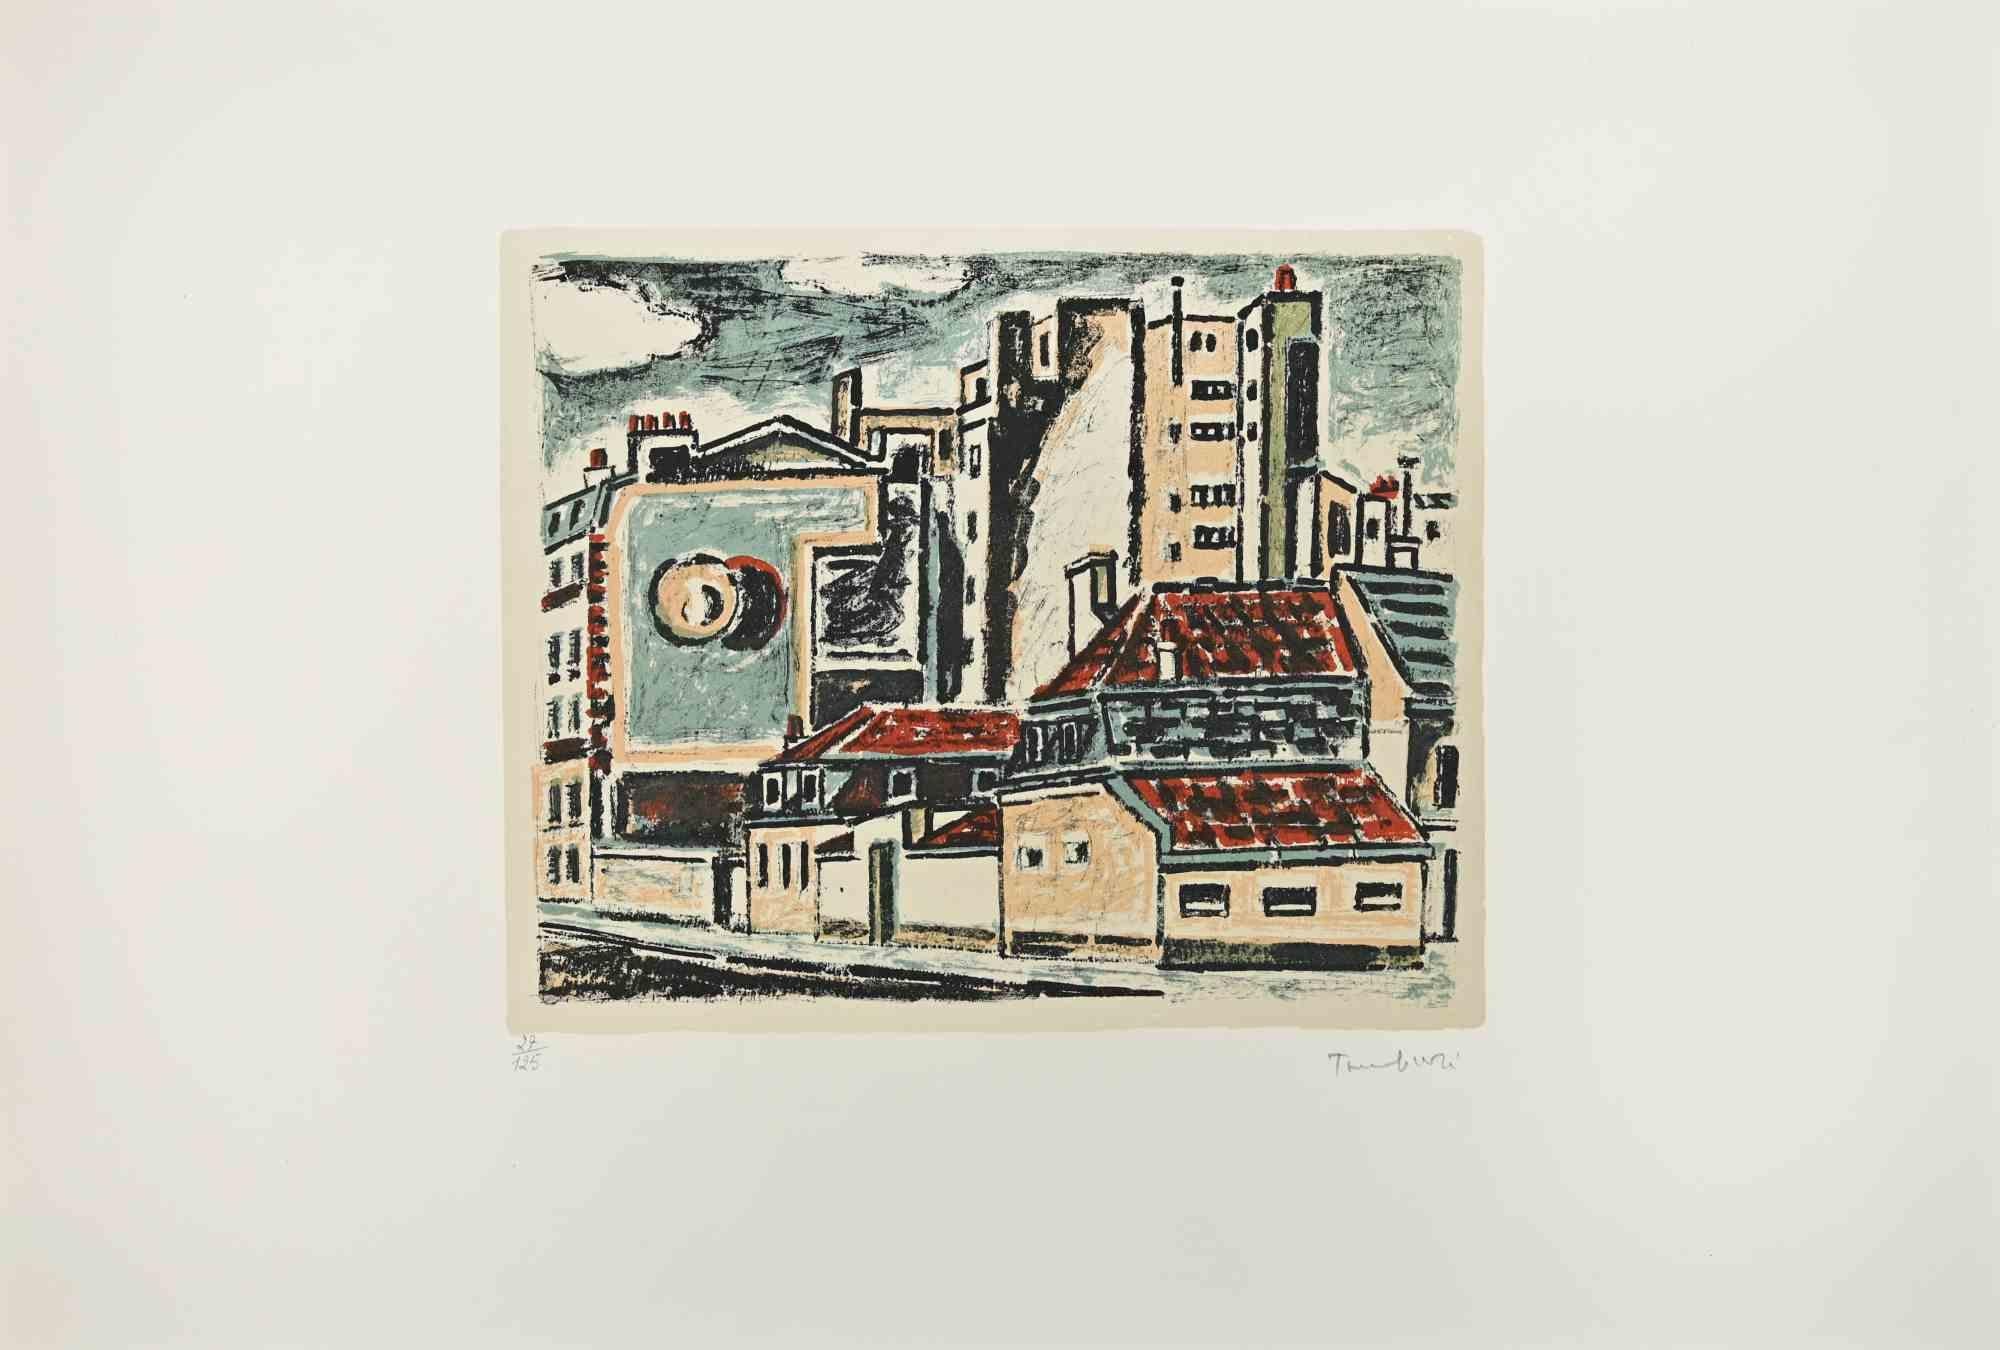 View of Paris ist ein modernes Kunstwerk, realisiert von Orfeo Tamburi  (Jesi, 1910 - Paris, 1994) in den 1970er Jahren. 

Farbige Radierung und Aquatinta auf Papier. 

Handsigniert.

Unten nummeriert, Auflage: 125 Exemplare.

Gute Bedingungen. 

 